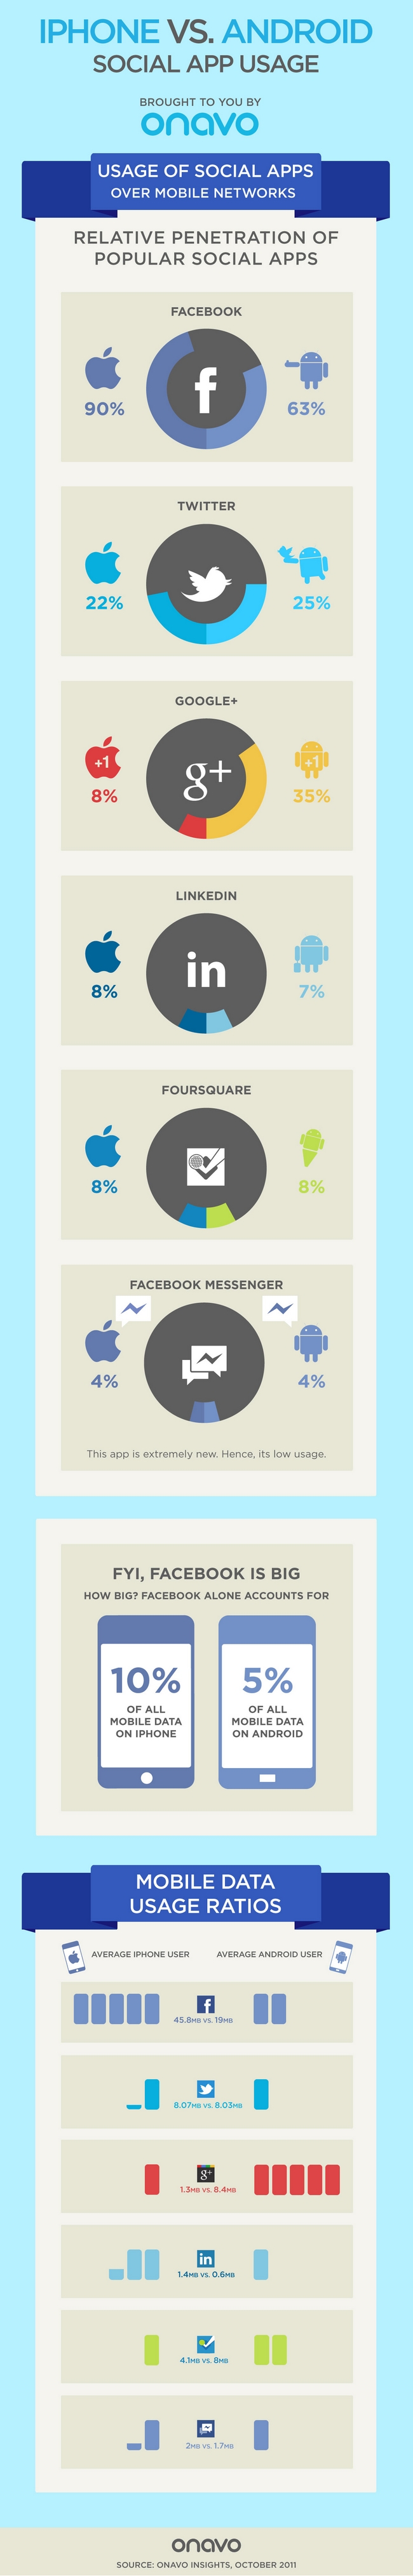 El uso de las aplicaciones sociales en Android y iPhone. 1